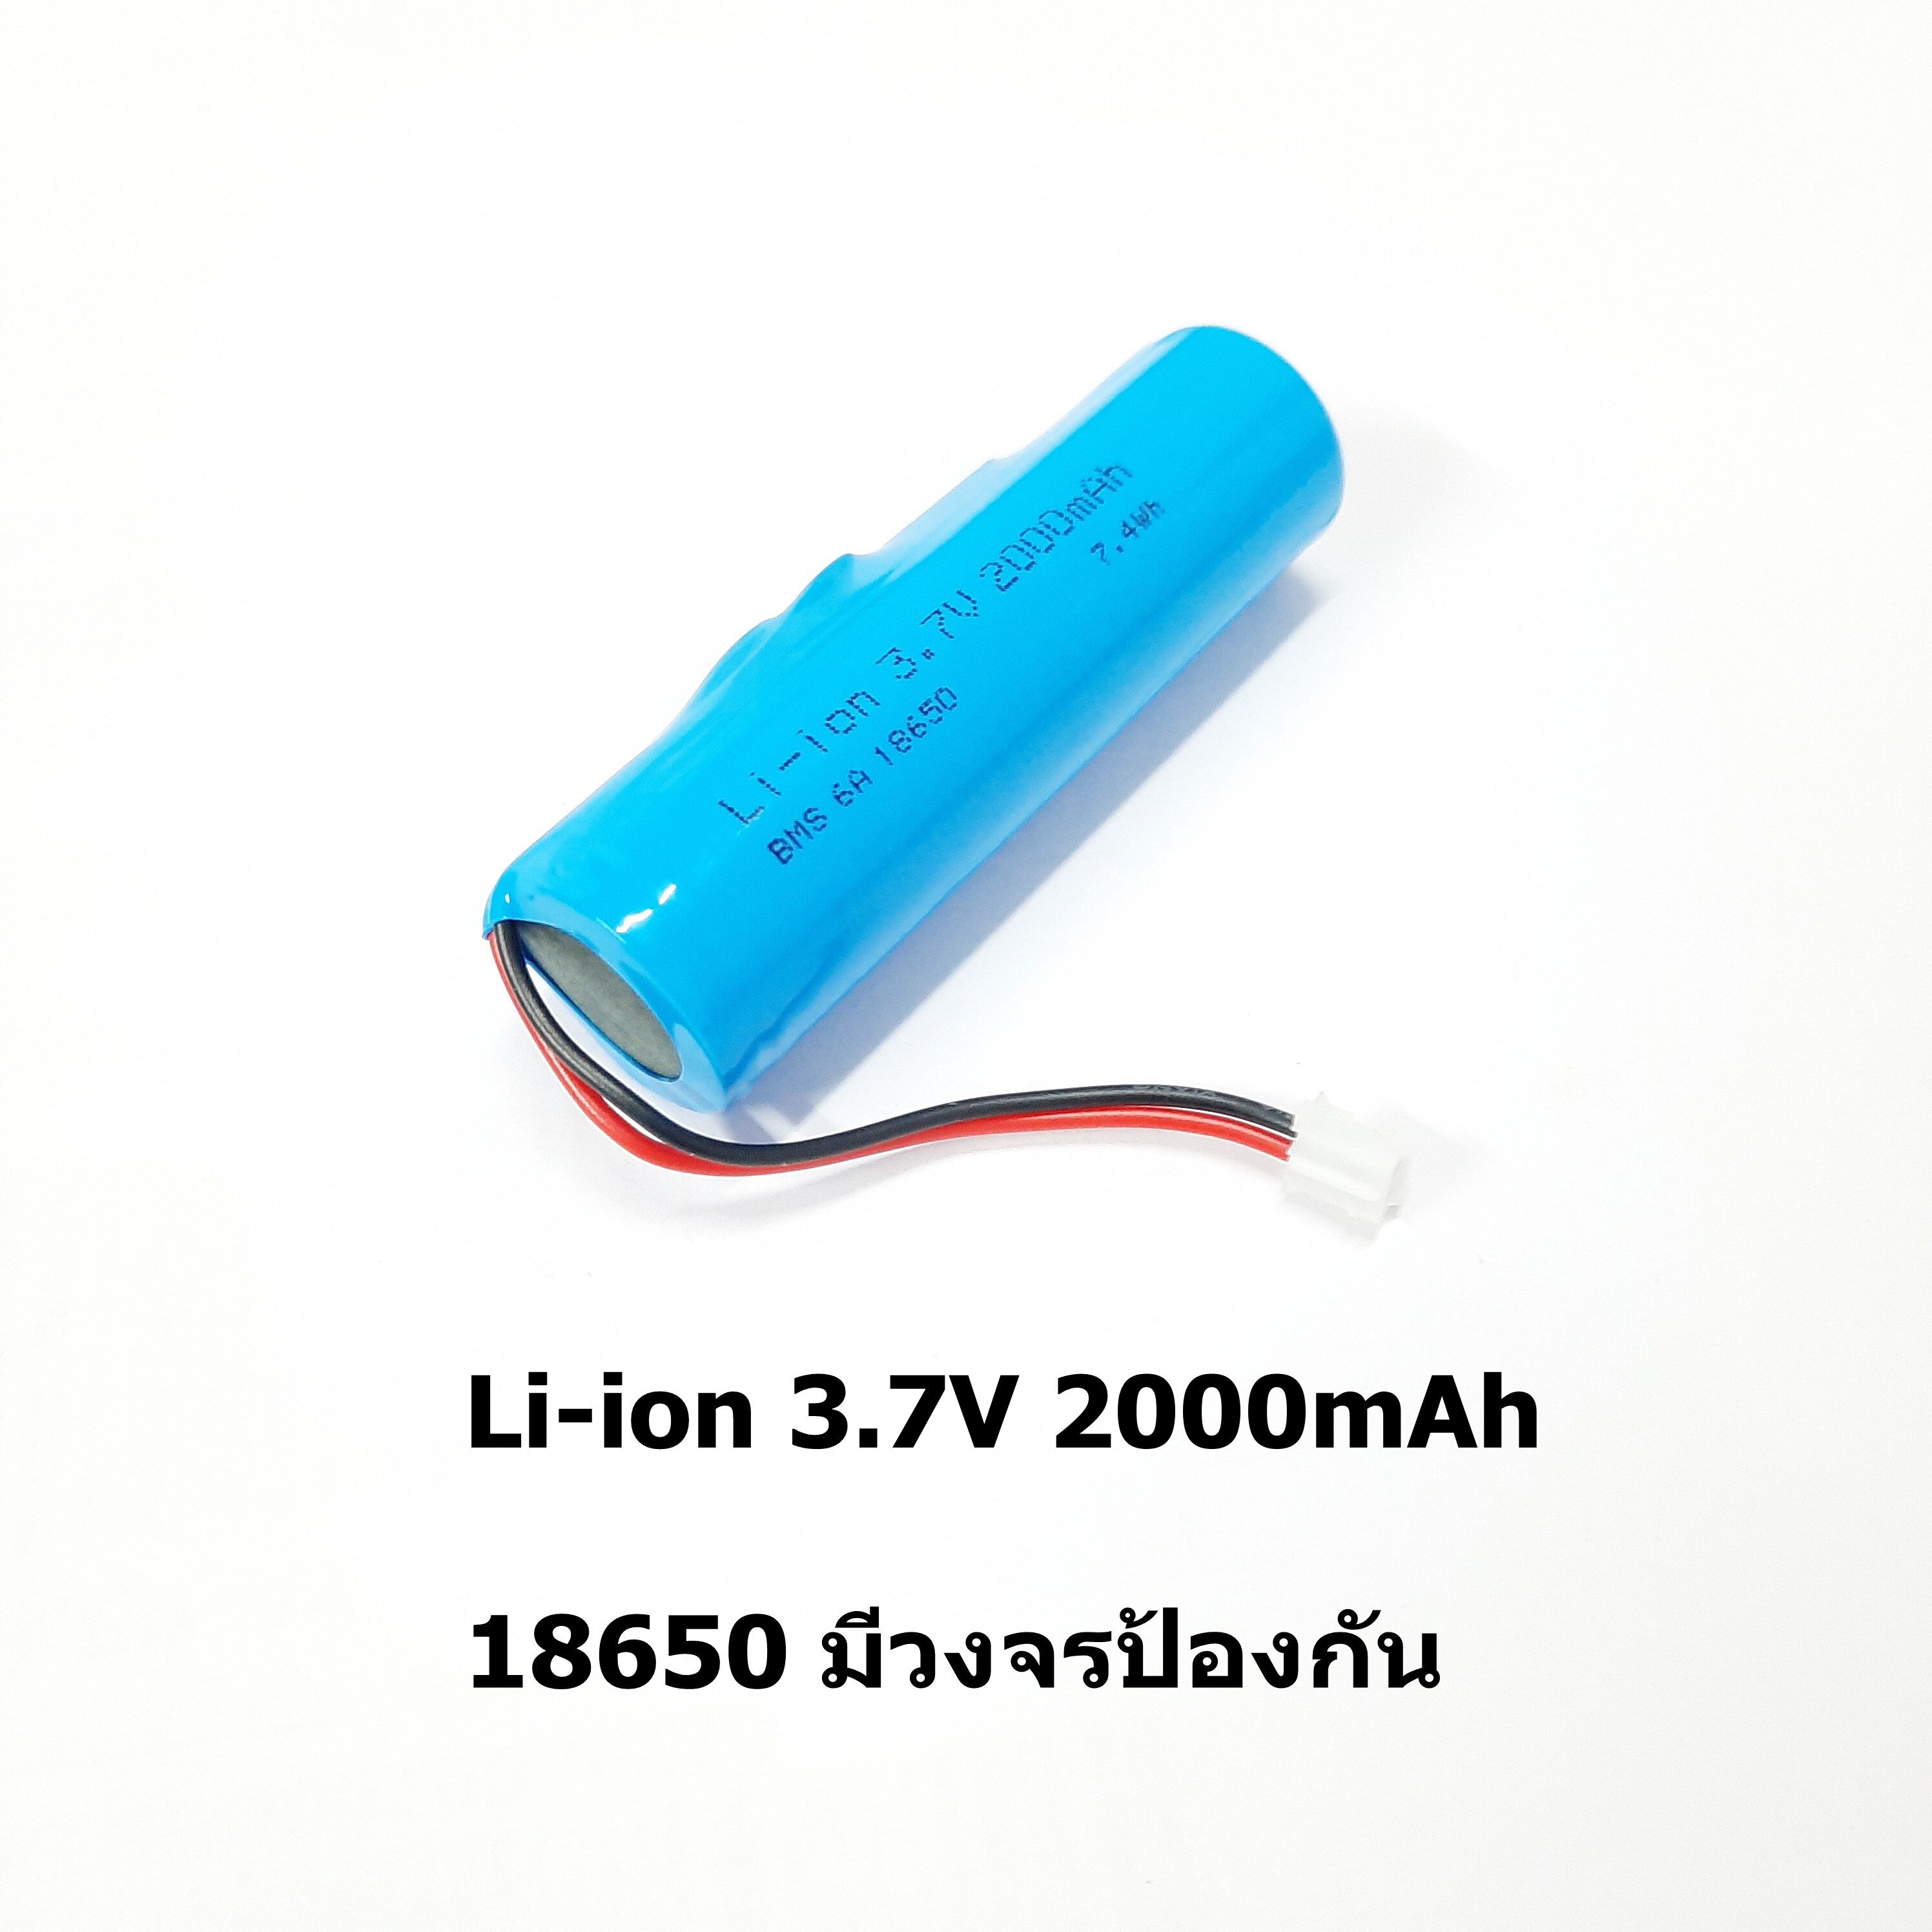 แบตเตอรี่ 3.7V Li-ion 2000mAh 18650 พร้อมวงจรป้องกัน